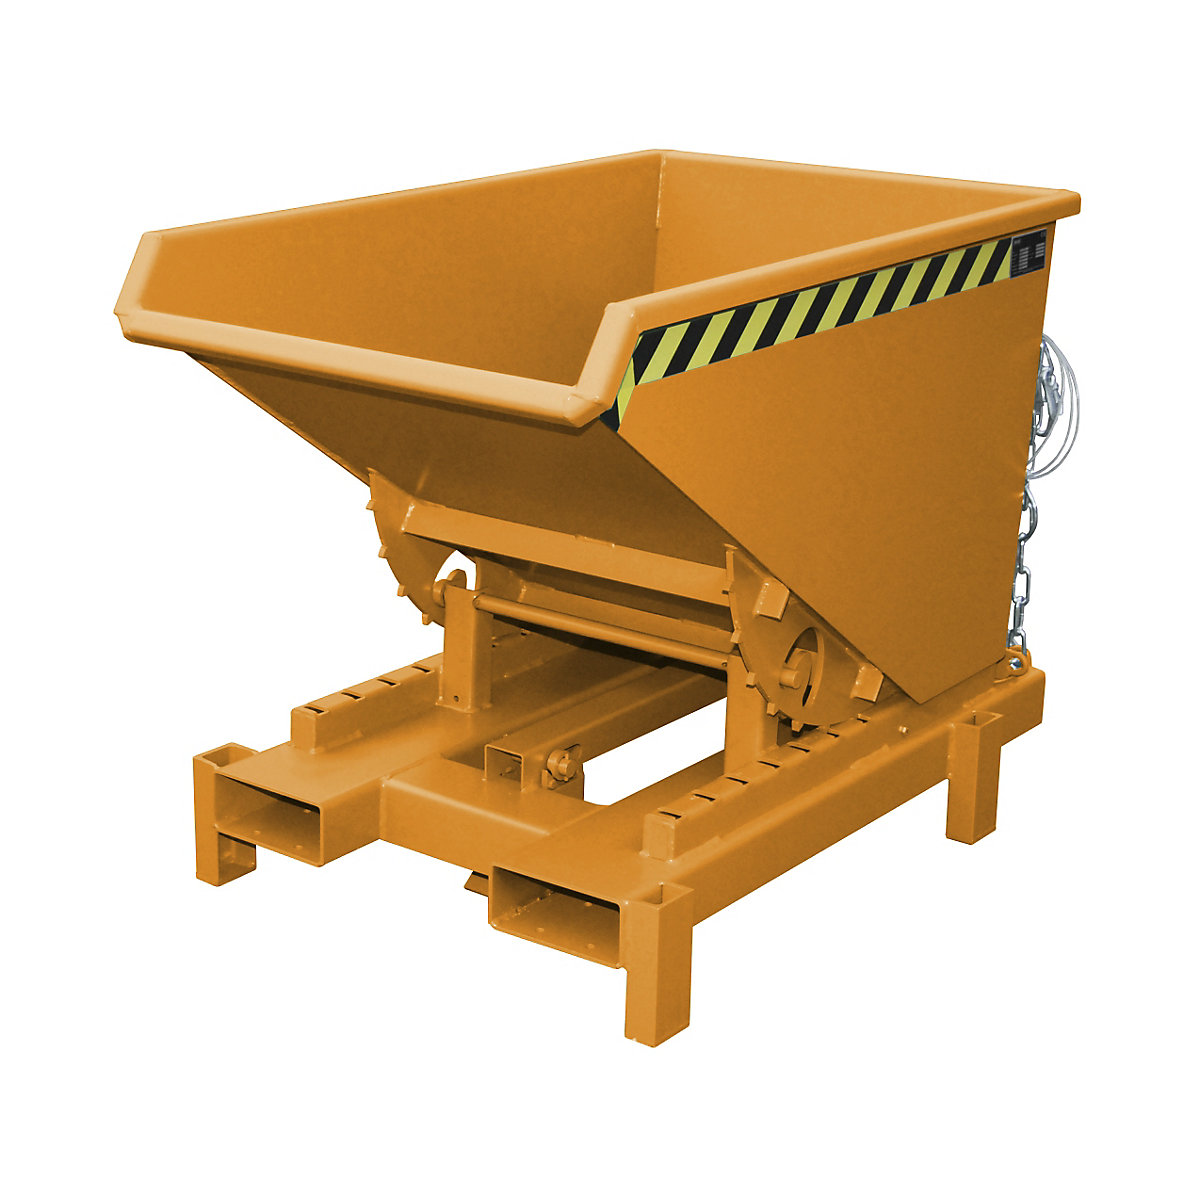 Volquete para cargas pesadas – eurokraft pro, capacidad 0,3 m³, carga máx. 4000 kg, naranja RAL 2000-10